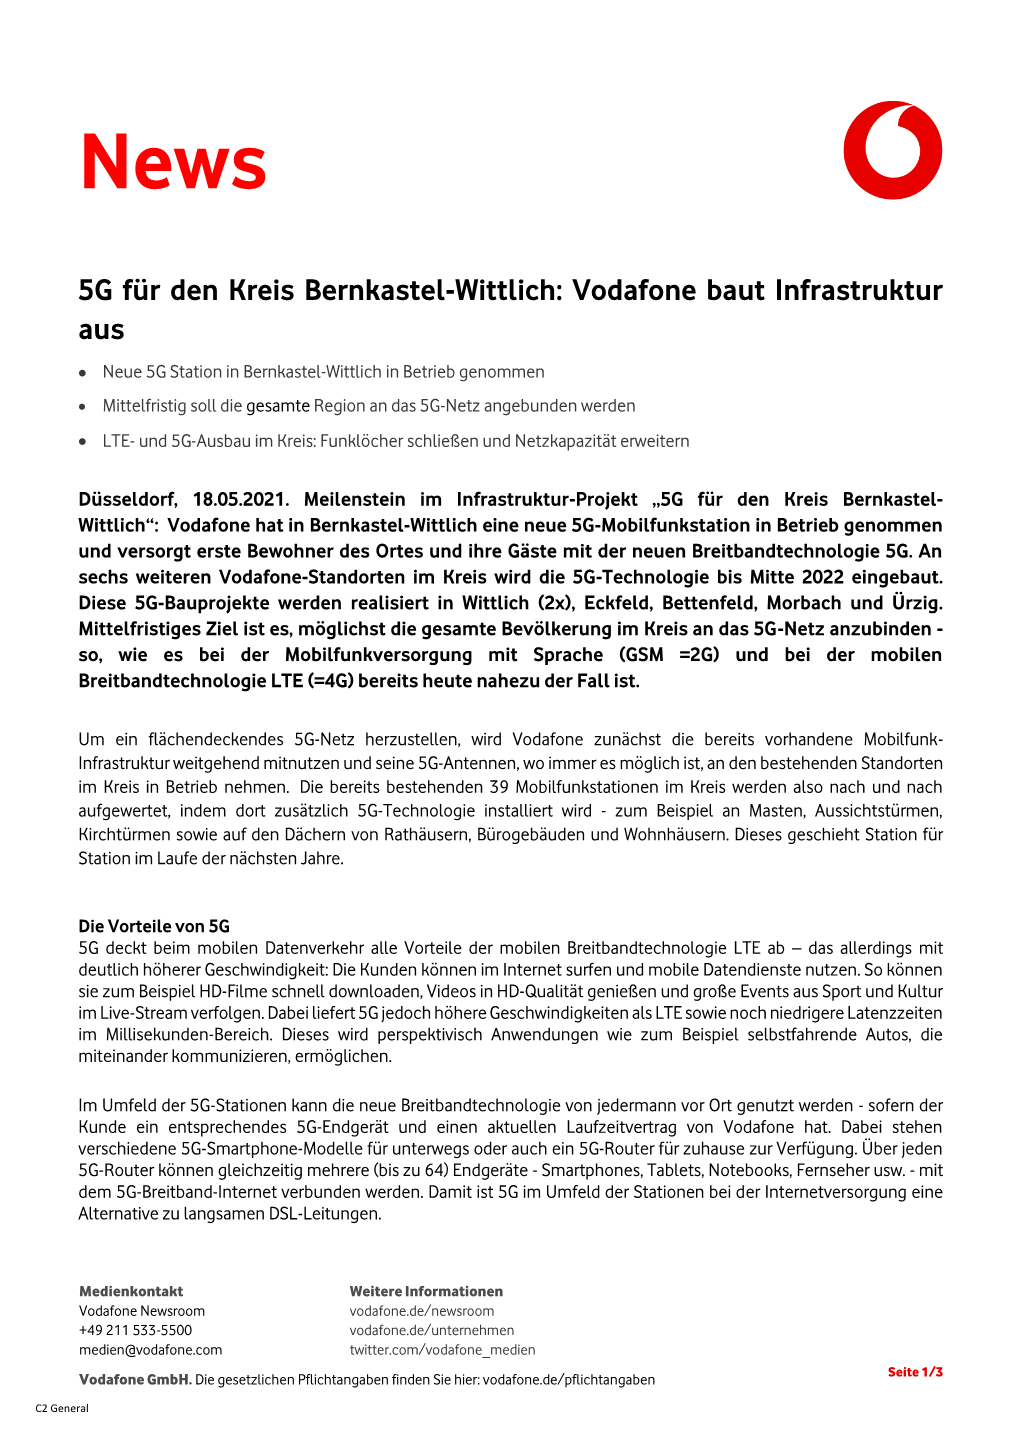 5G Für Den Kreis Bernkastel-Wittlich: Vodafone Baut Infrastruktur